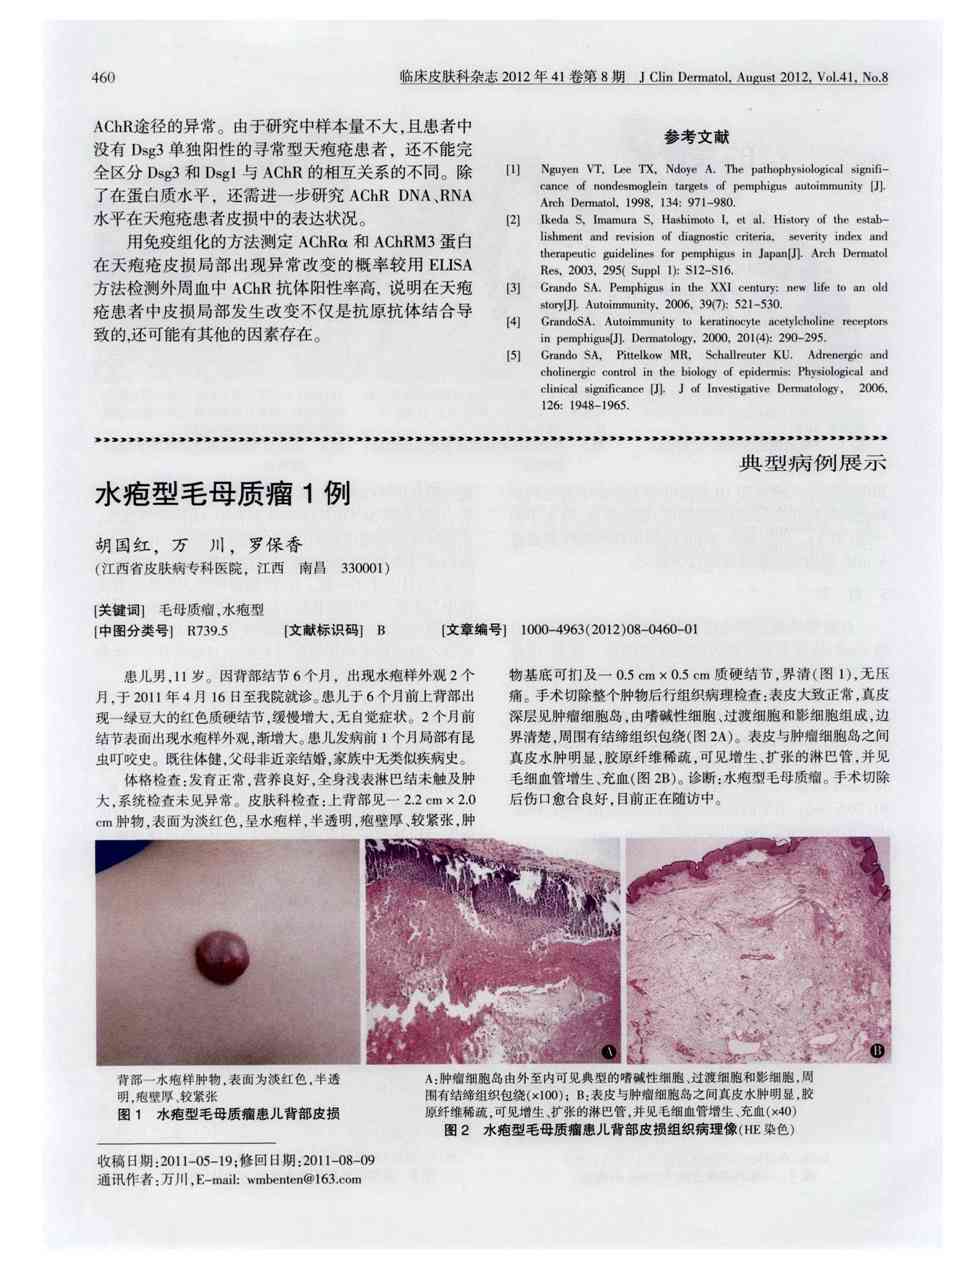 期刊水疱型毛母质瘤1例被引量:1     患儿男,11岁.